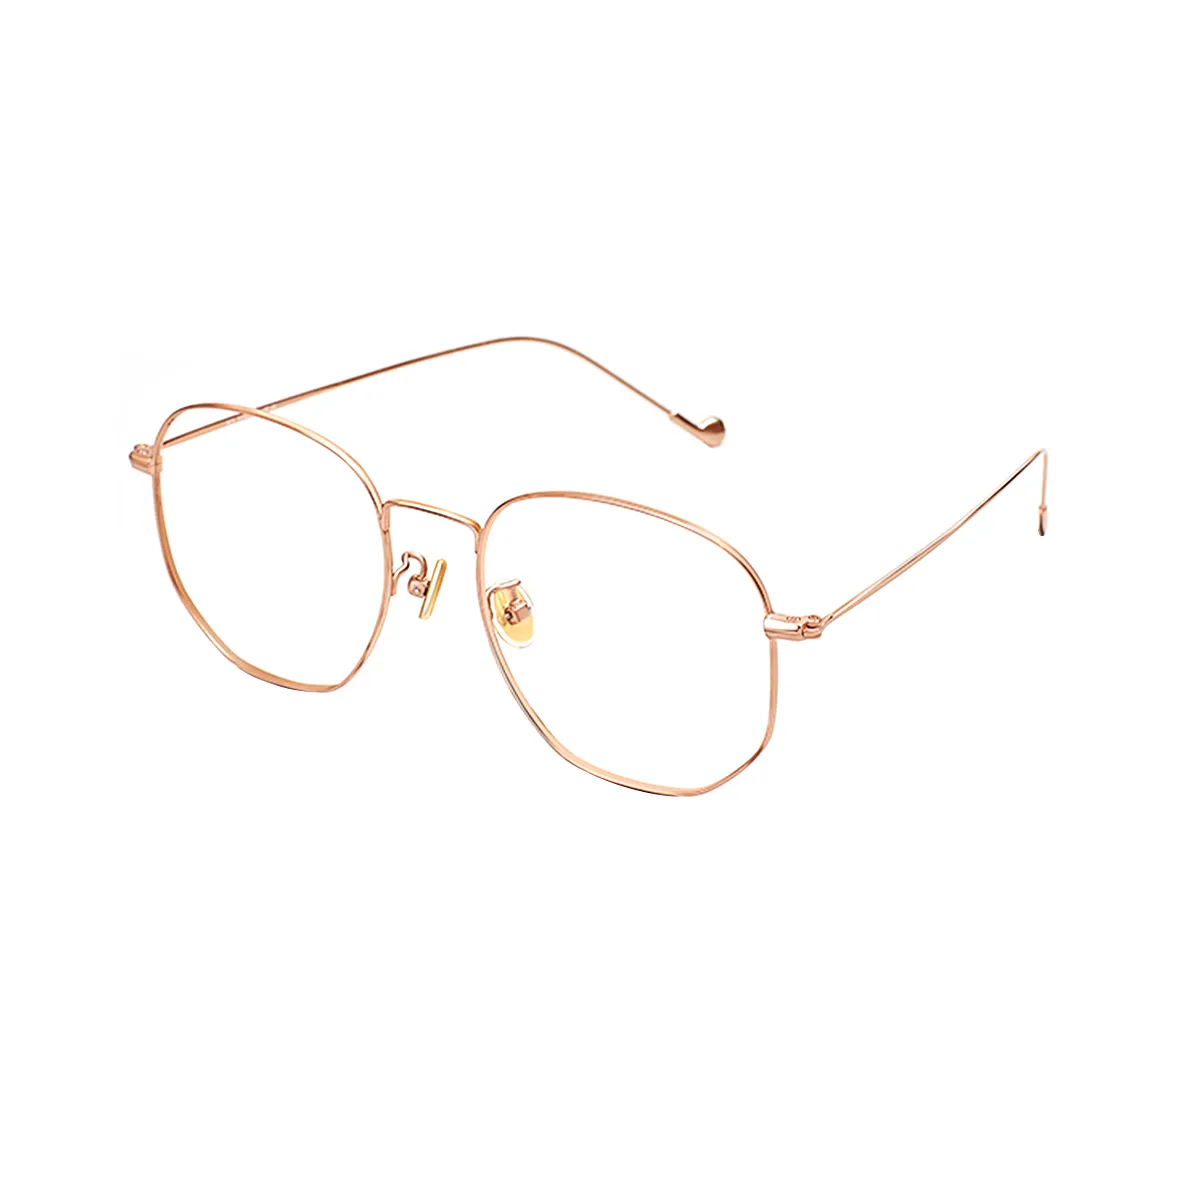 Rosanna - Square Rose-Gold Glasses for Women